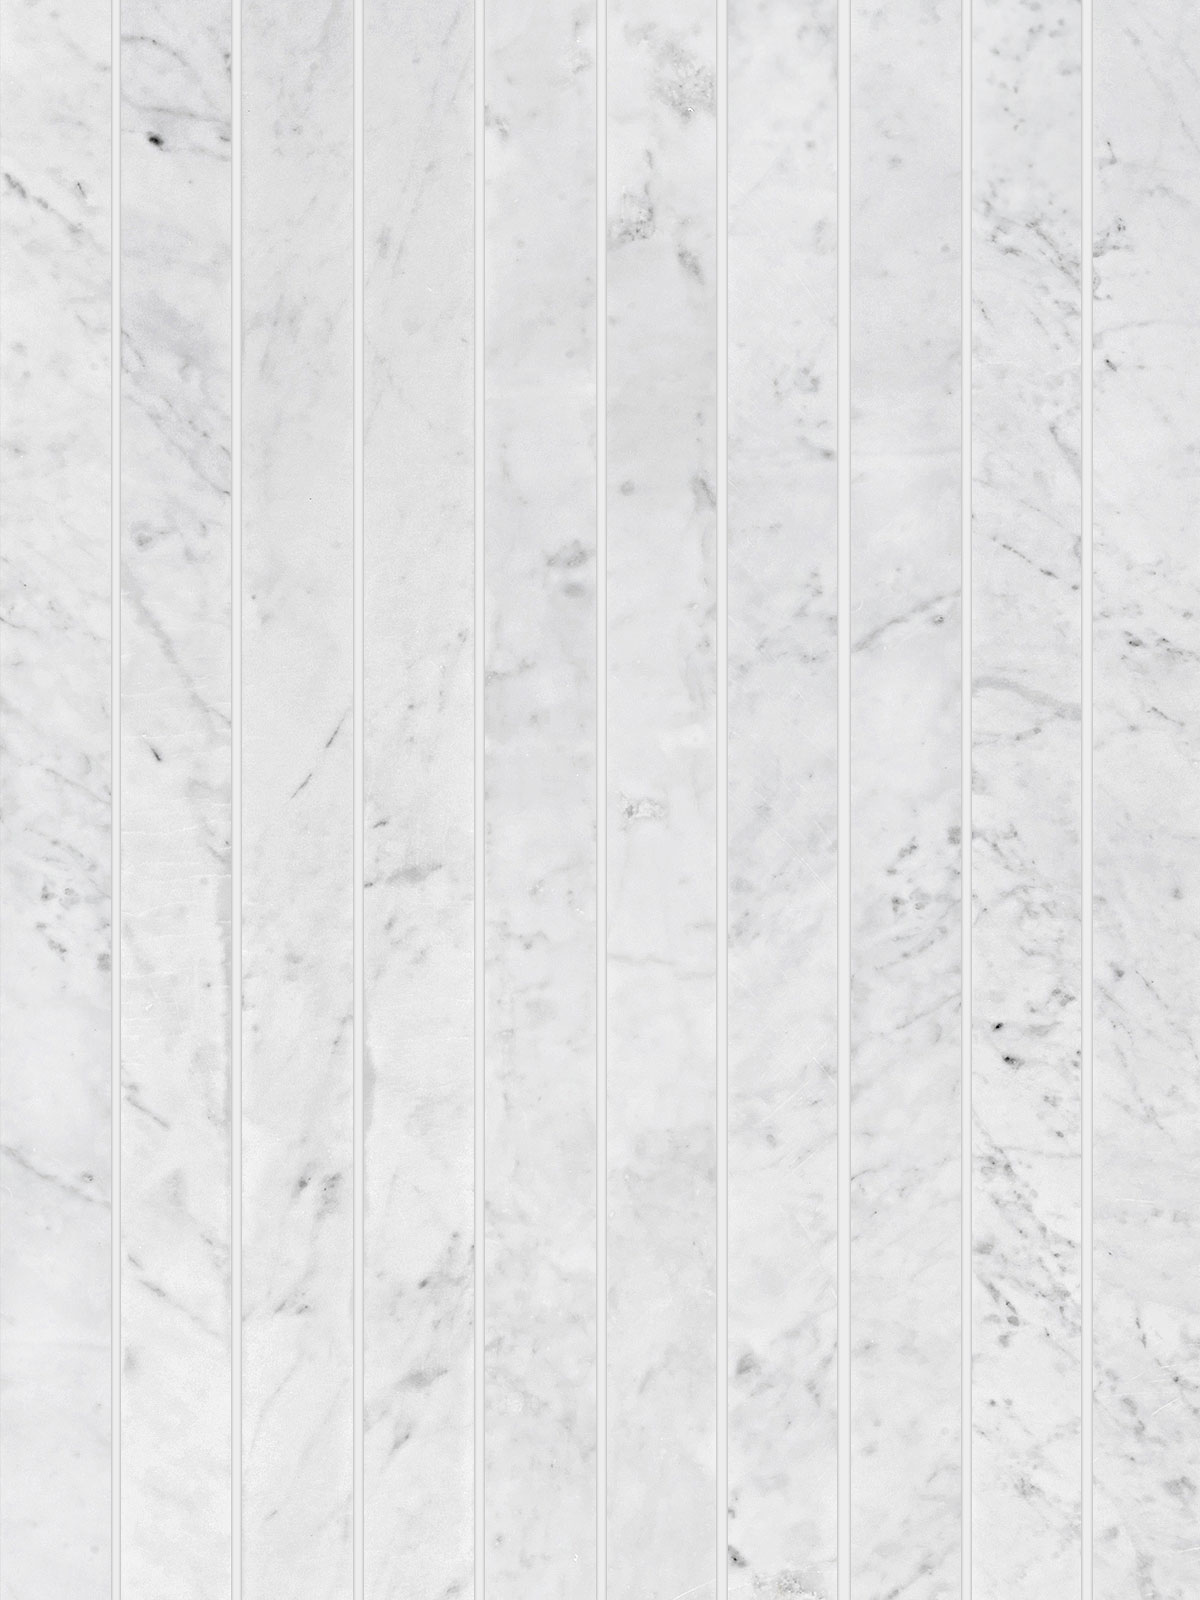 Modern Long Marble Carrara Gray Backsplash Mosaic Tile BA1077 5